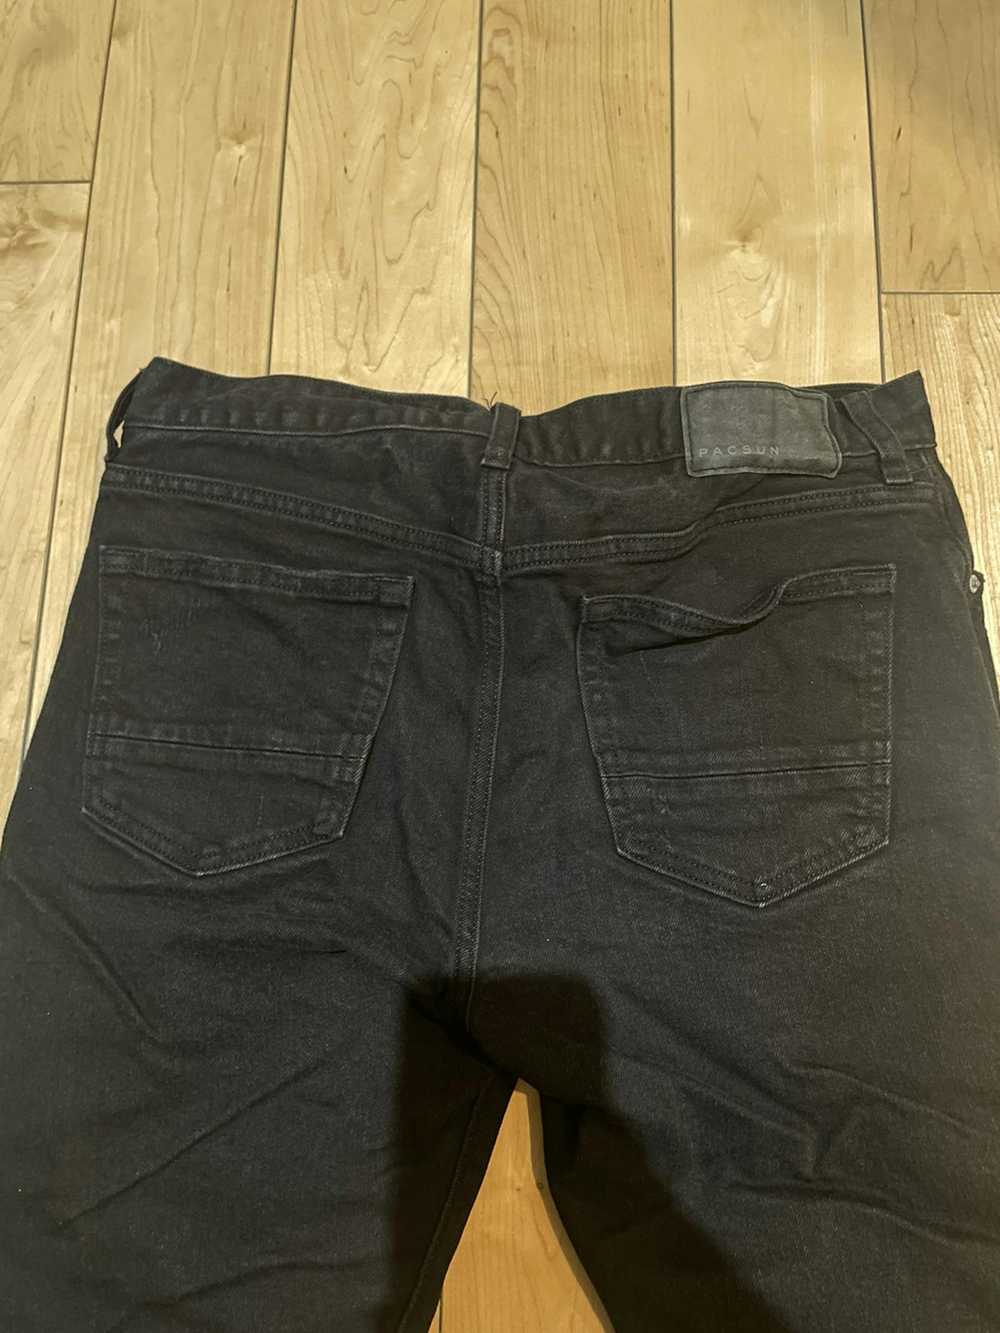 Pacsun Pacsun black slim taper jeans size 30x32 - image 6